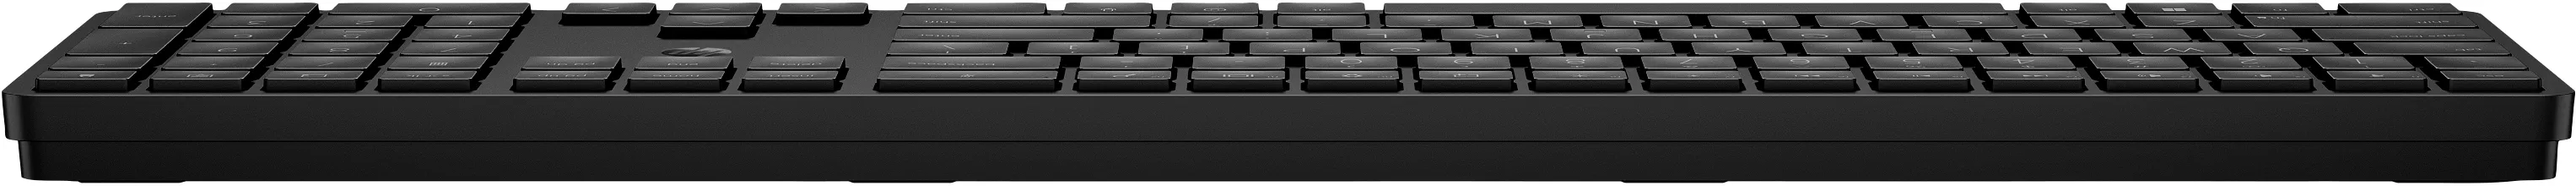 Vente HP 450 BLK Programmable Wireless Keyboard HP au meilleur prix - visuel 4